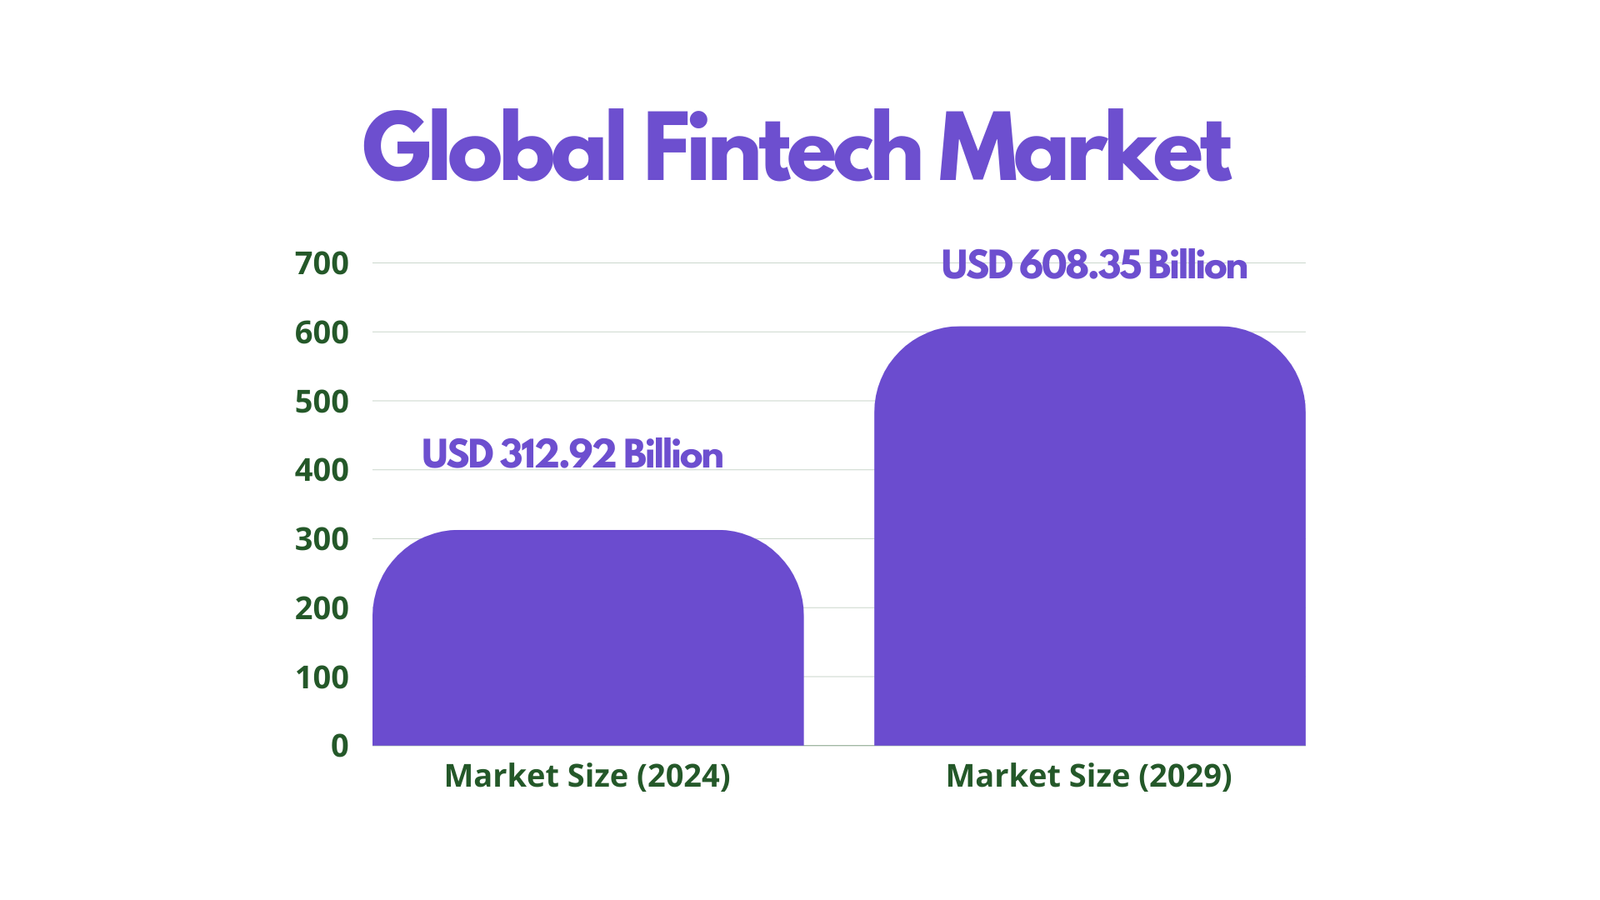 Global Fintech Market